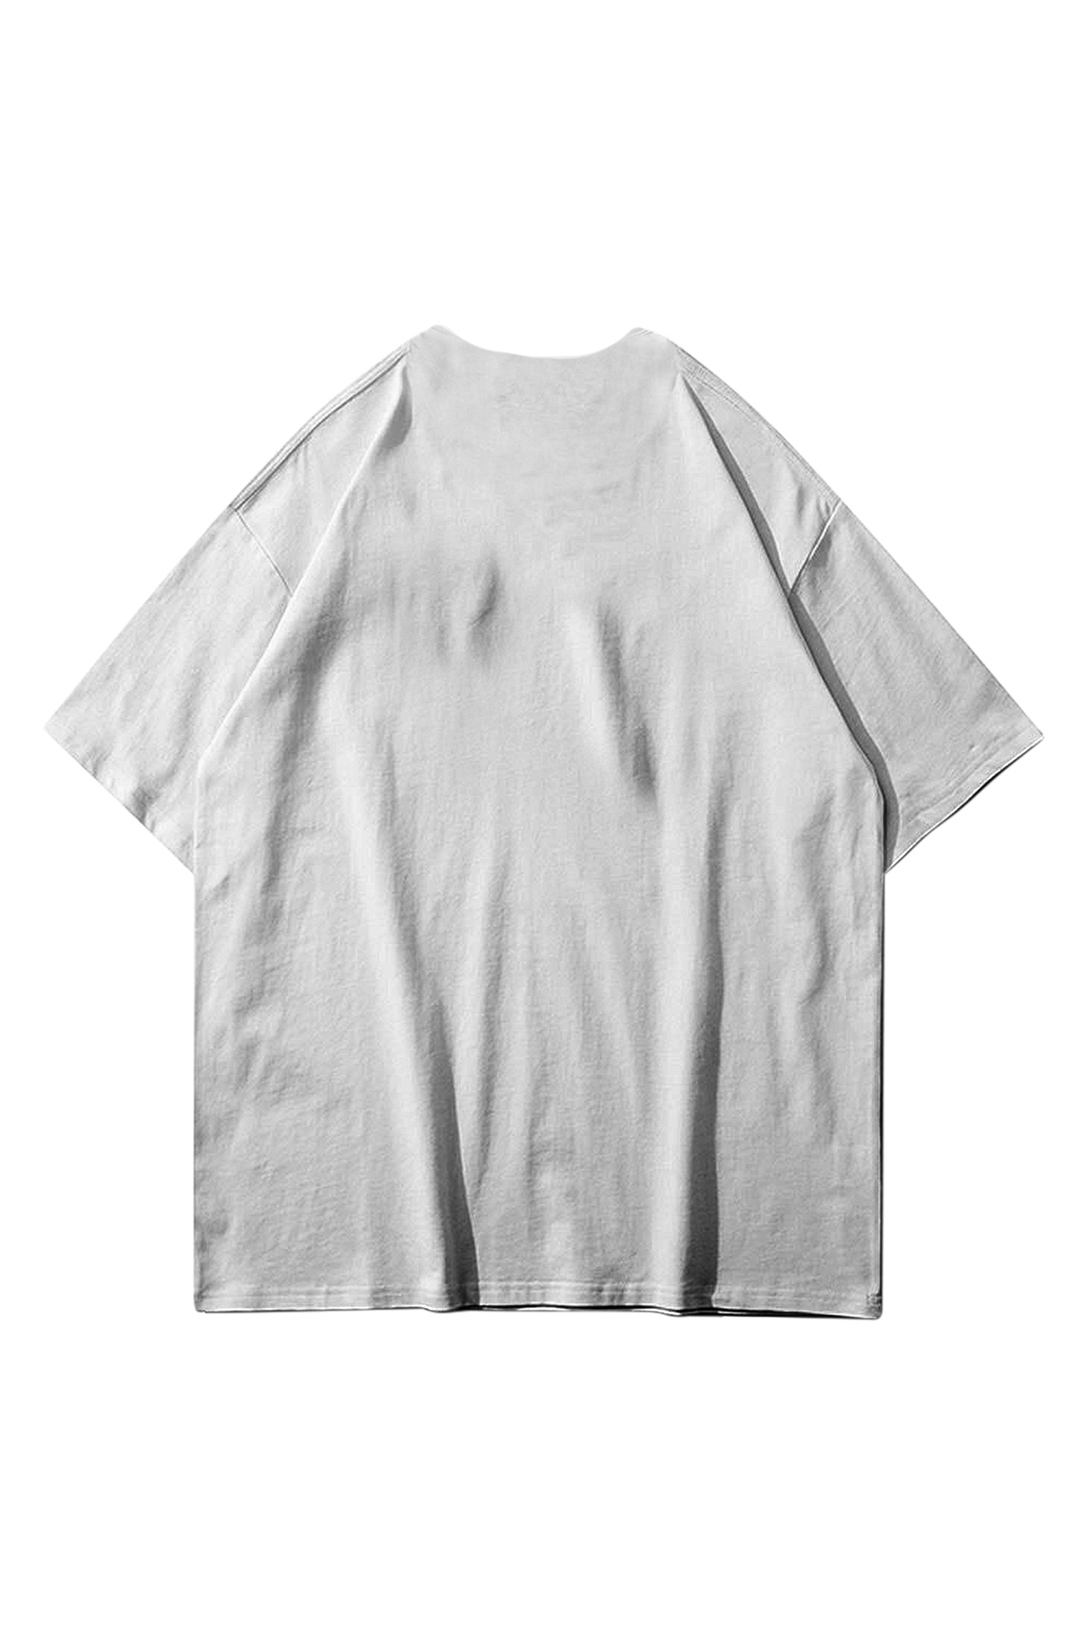 Trendiz Unisex Essentials 303 Beyaz Tshirt